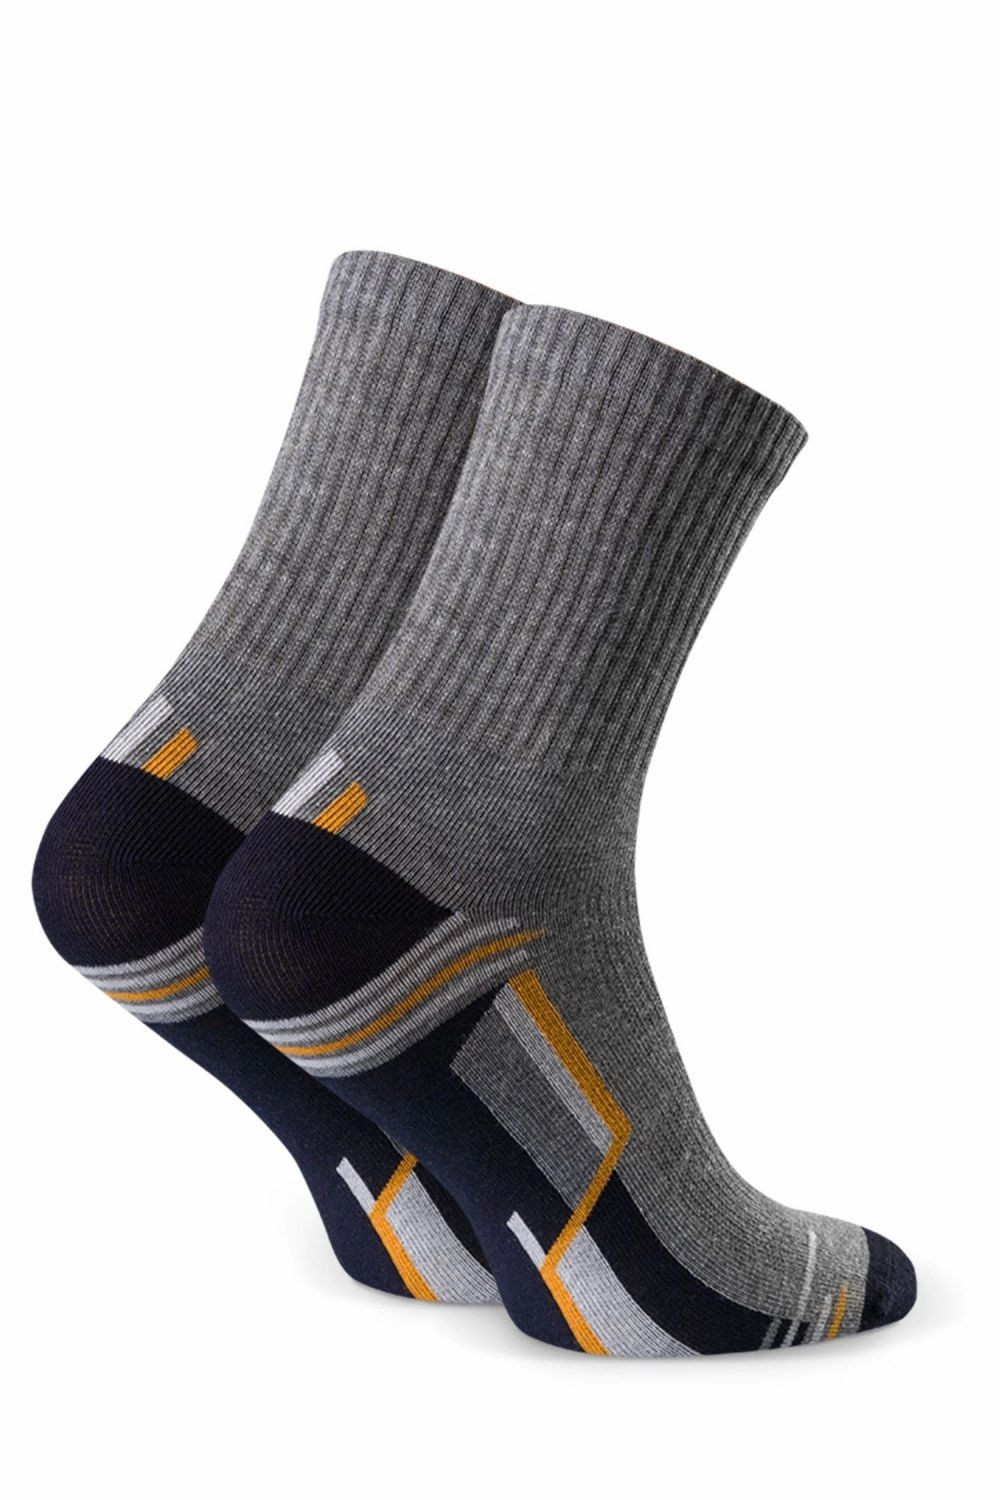 Dětské ponožky 022 290 grey - Steven šedá 35/37